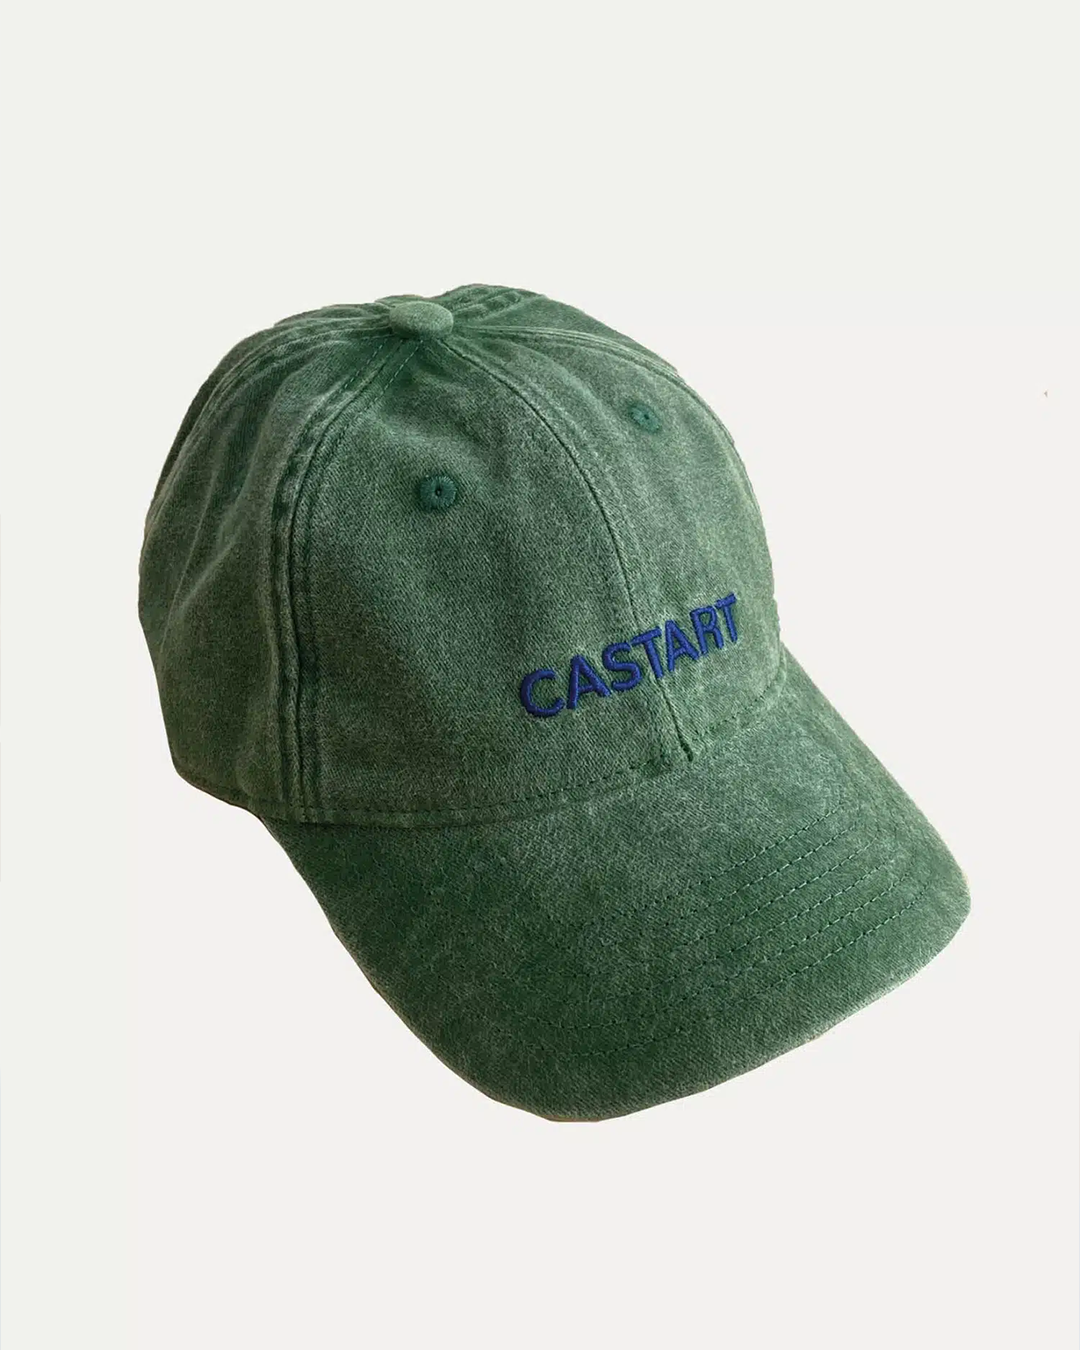 Castart - Logo Cap - Green